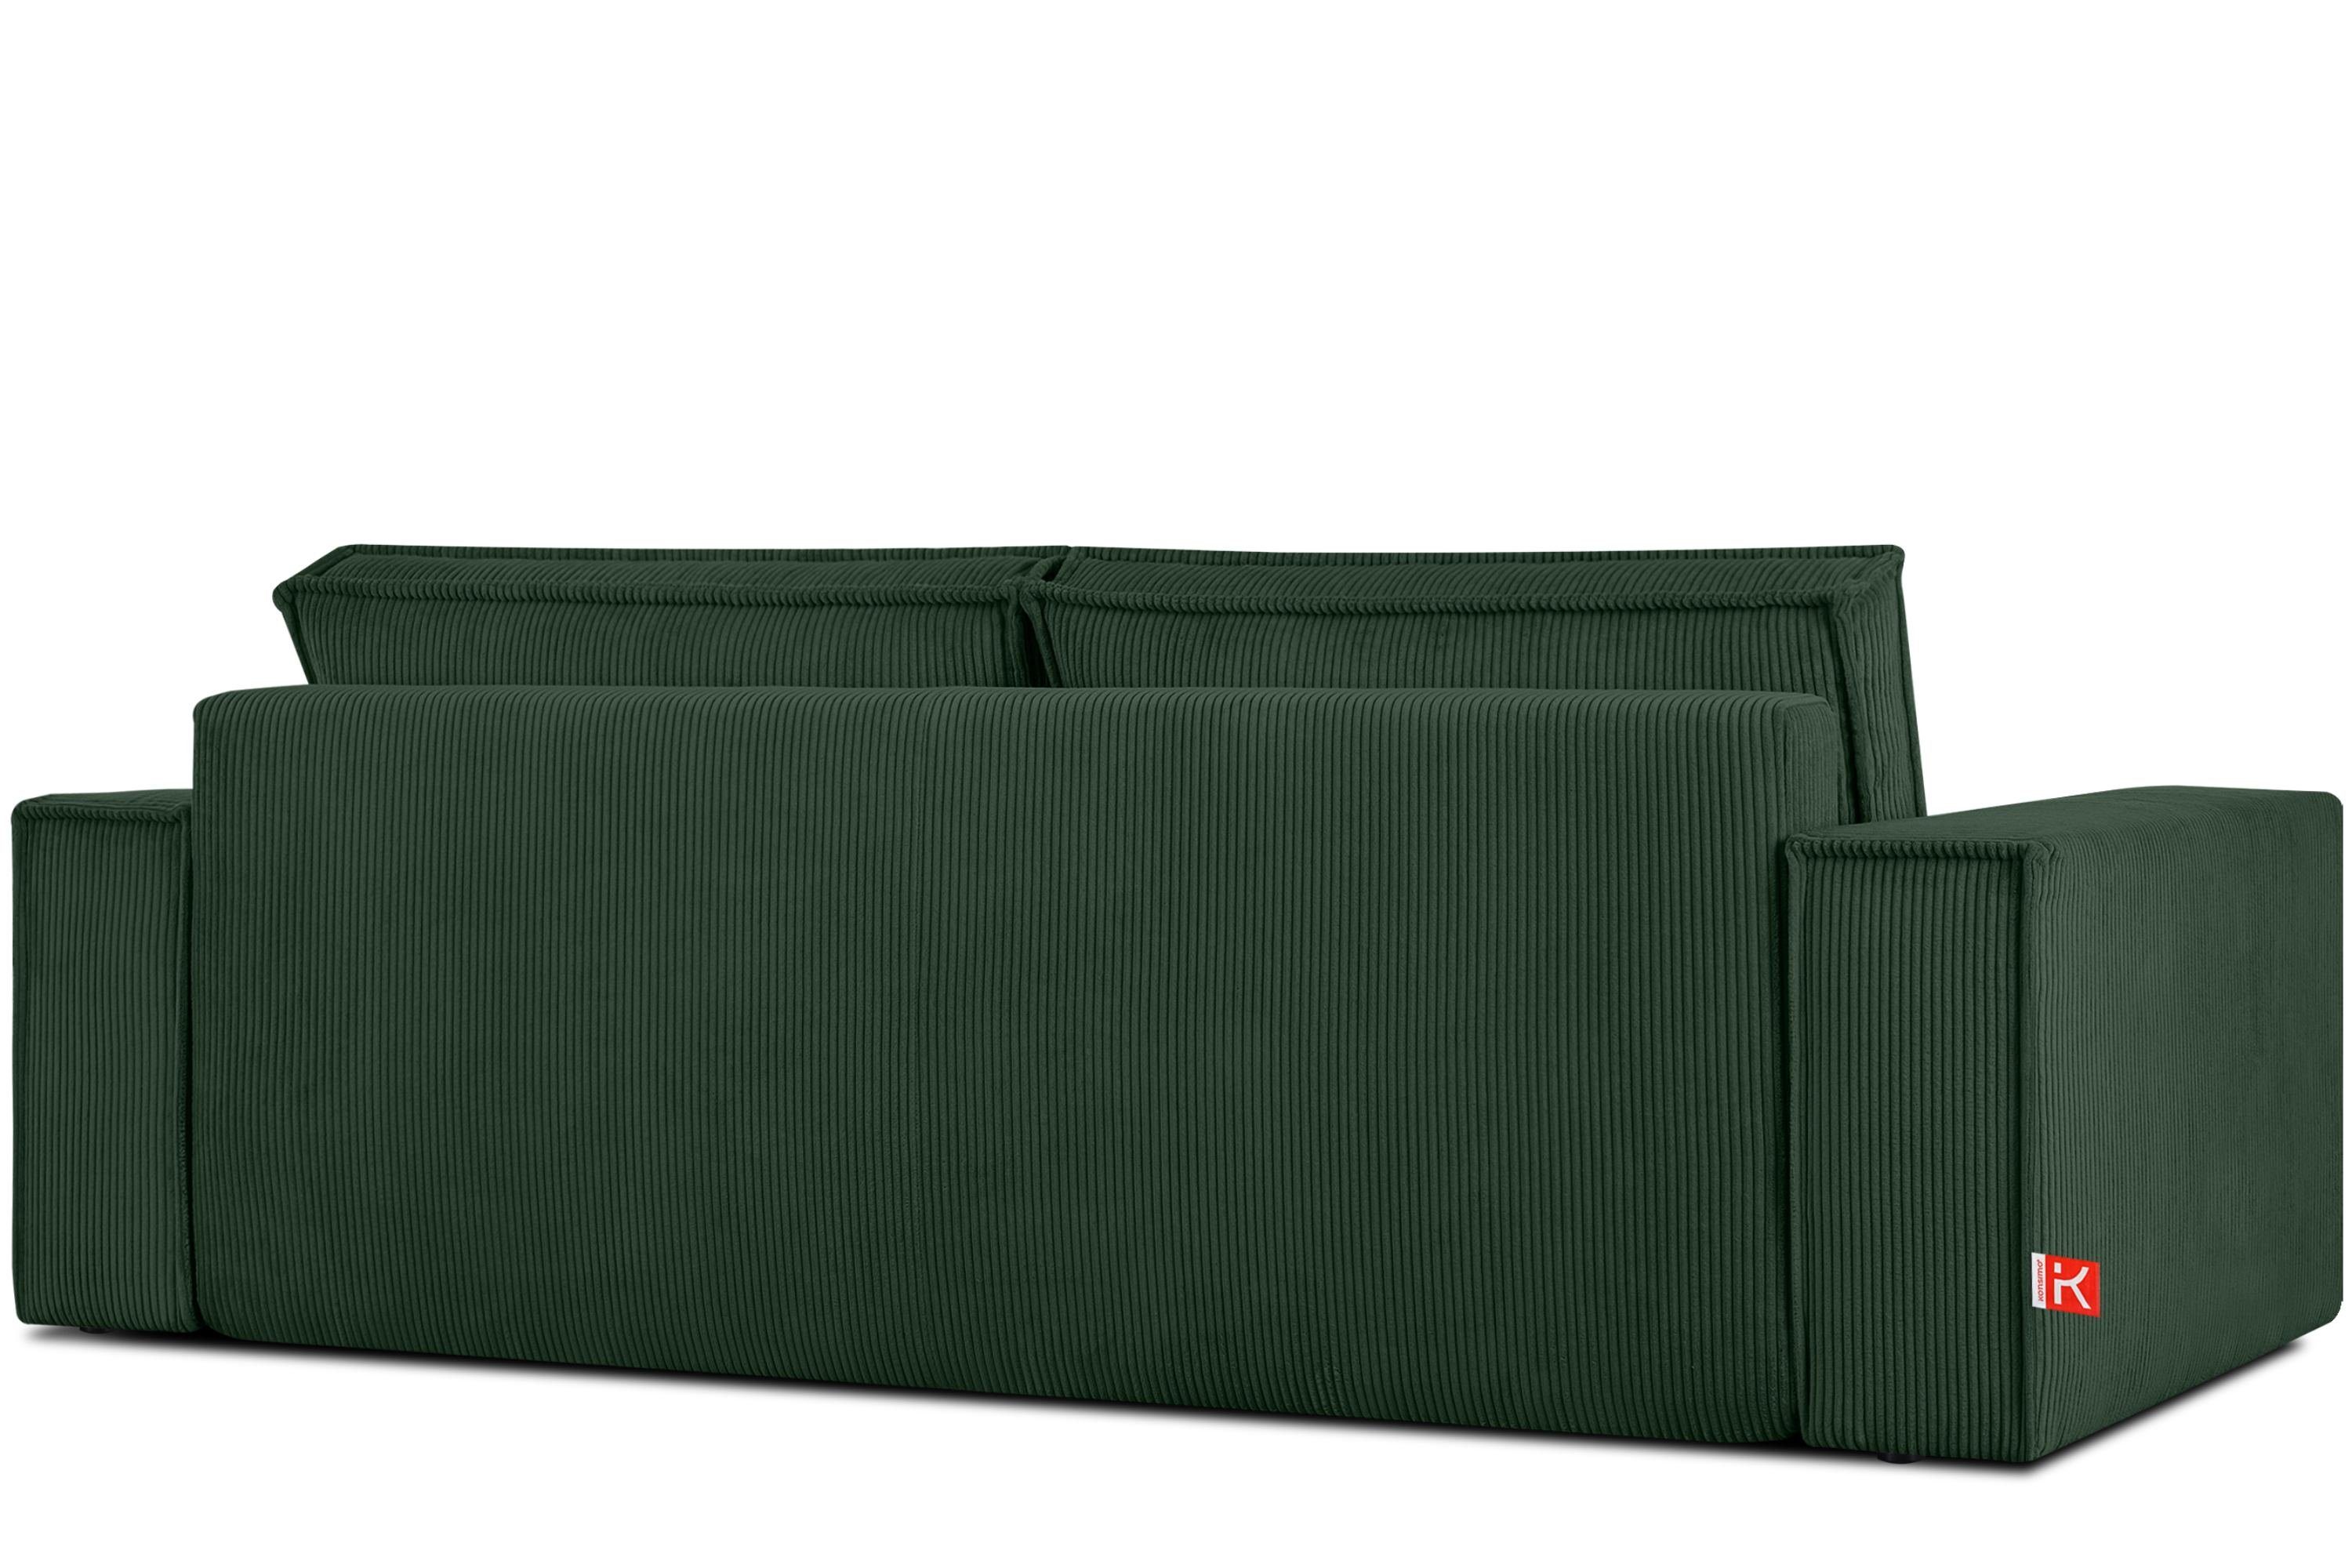 Friendly dunkelgrün EU, Konsimo Schlaffunktion, mit der 3-Sitzer in hergestellt NAPI, Pet Cord-Stoff in